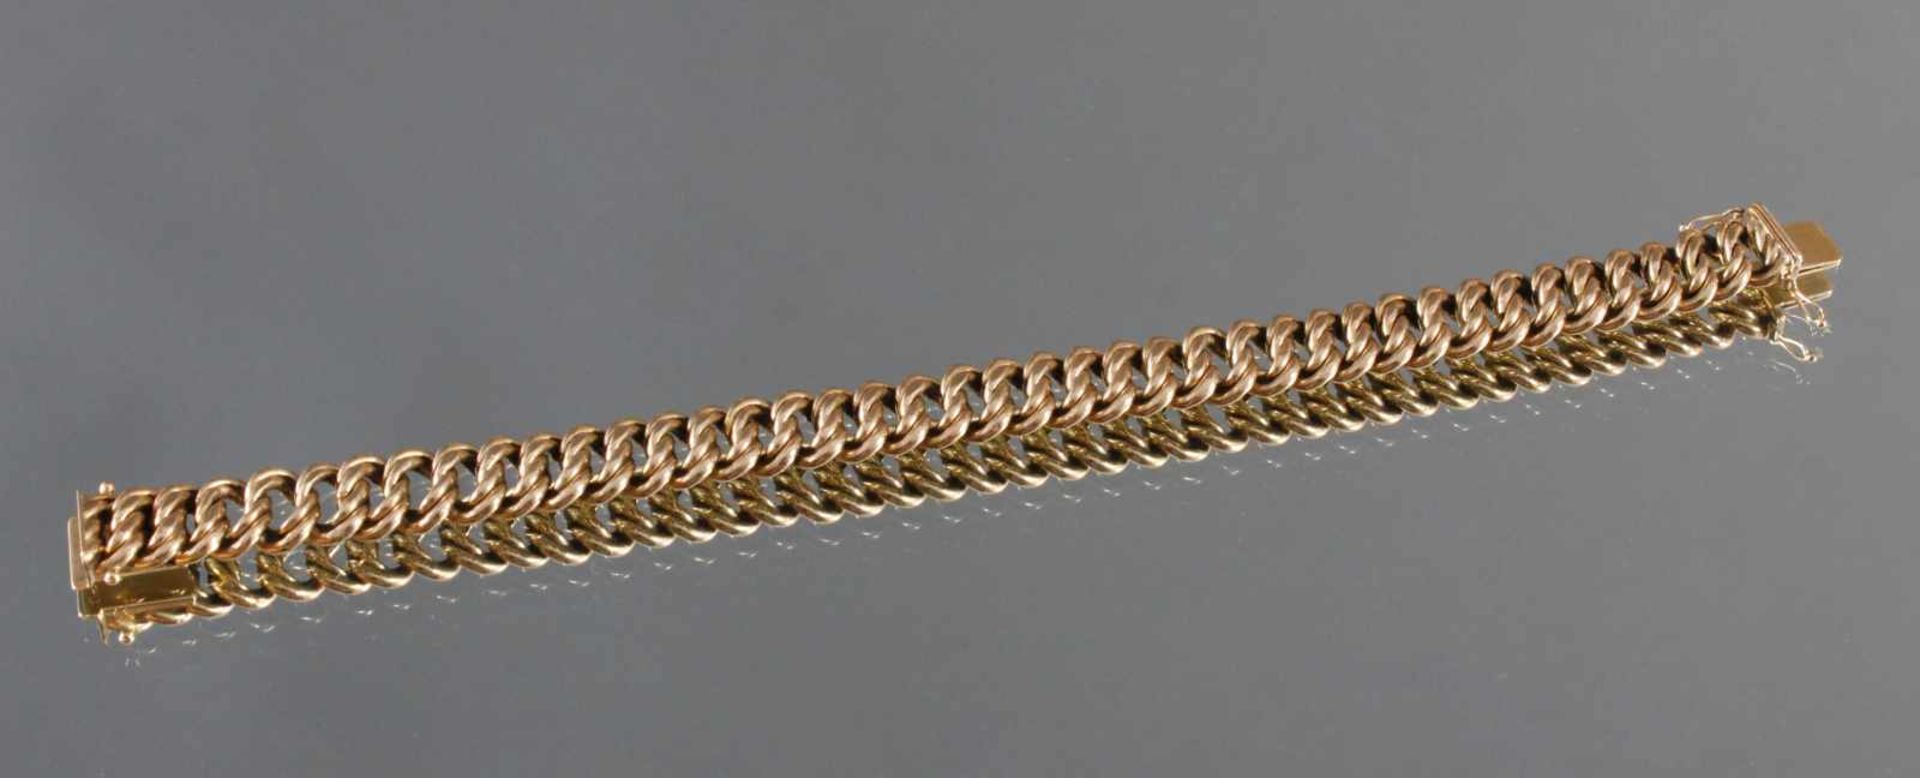 Damenarmband aus 14 Karat GelbgoldAn der Schließe punziert 585, ca Länge 21 cm, 27 g.- - -20.00 % - Bild 2 aus 2